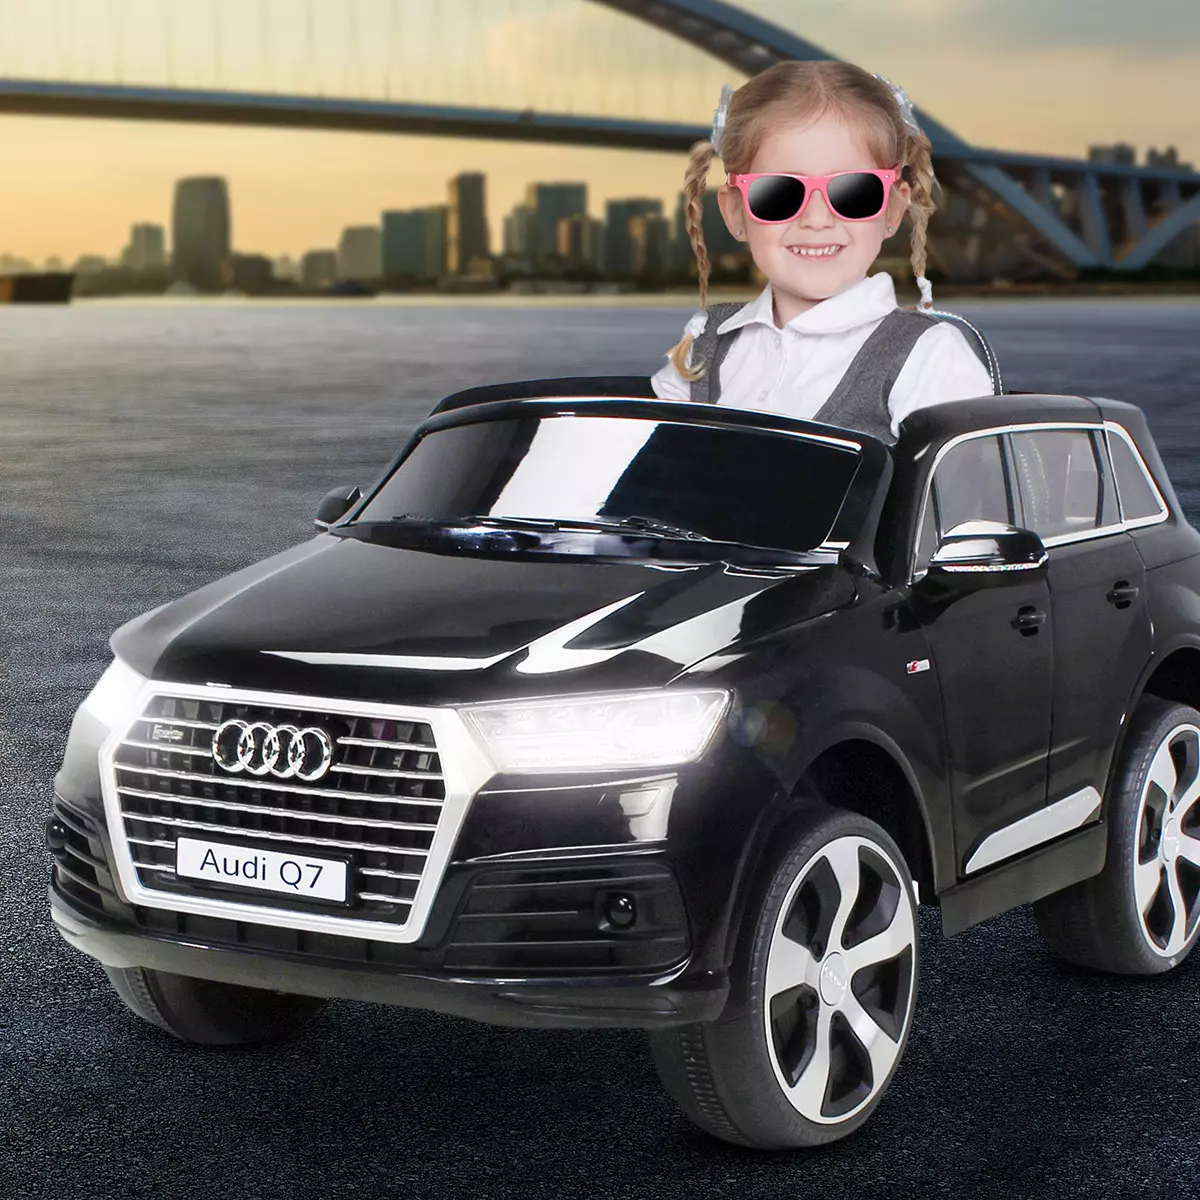 Kinder-Elektroauto Audi Q7 4L Lizenziert (Weiß) bei Marktkauf online  bestellen